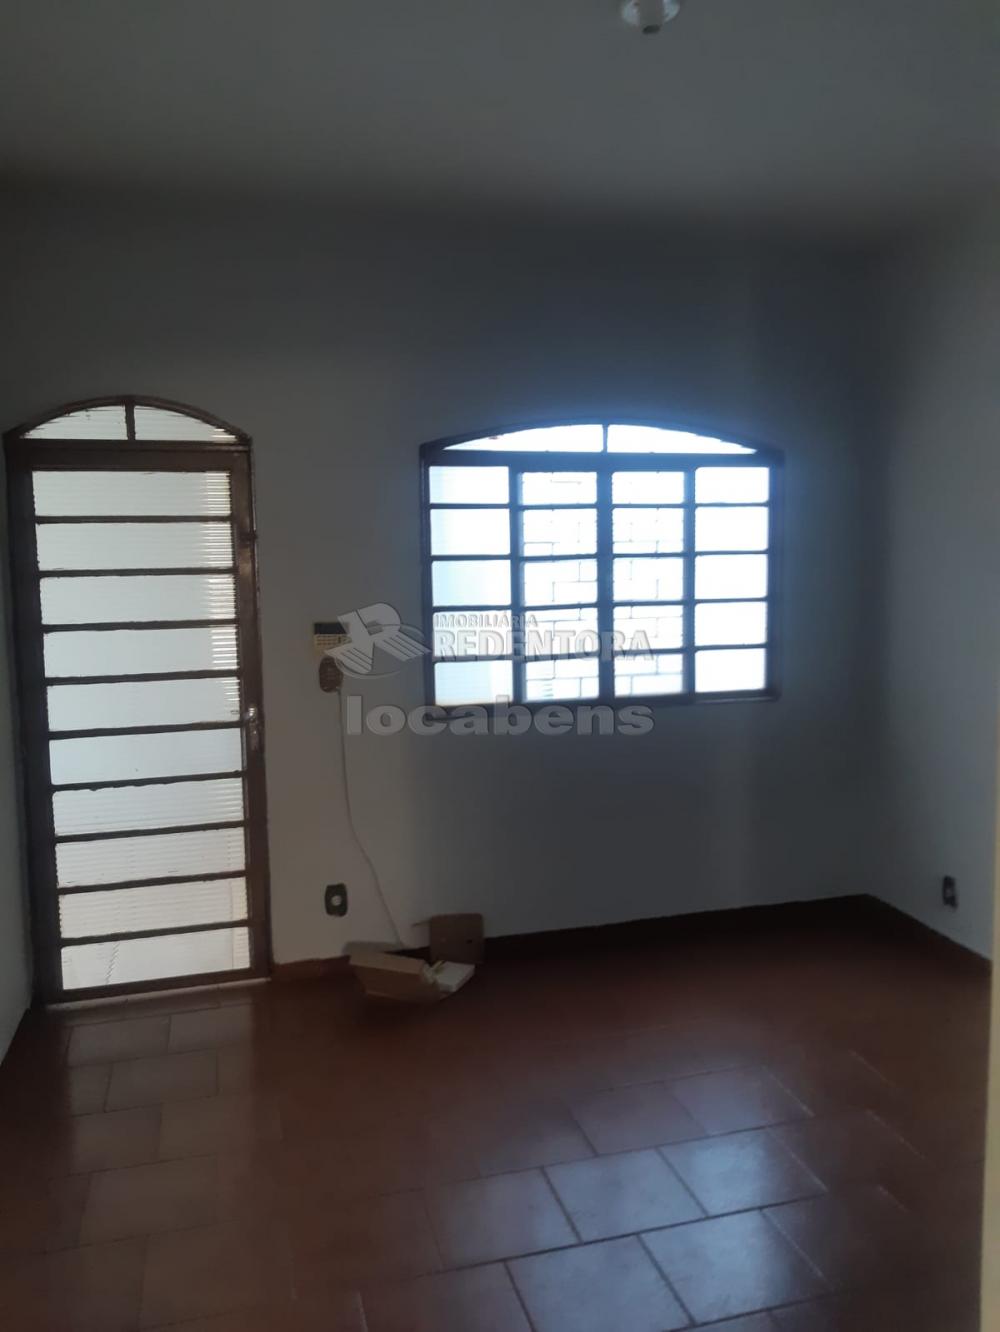 Comprar Casa / Padrão em São José do Rio Preto apenas R$ 310.000,00 - Foto 6